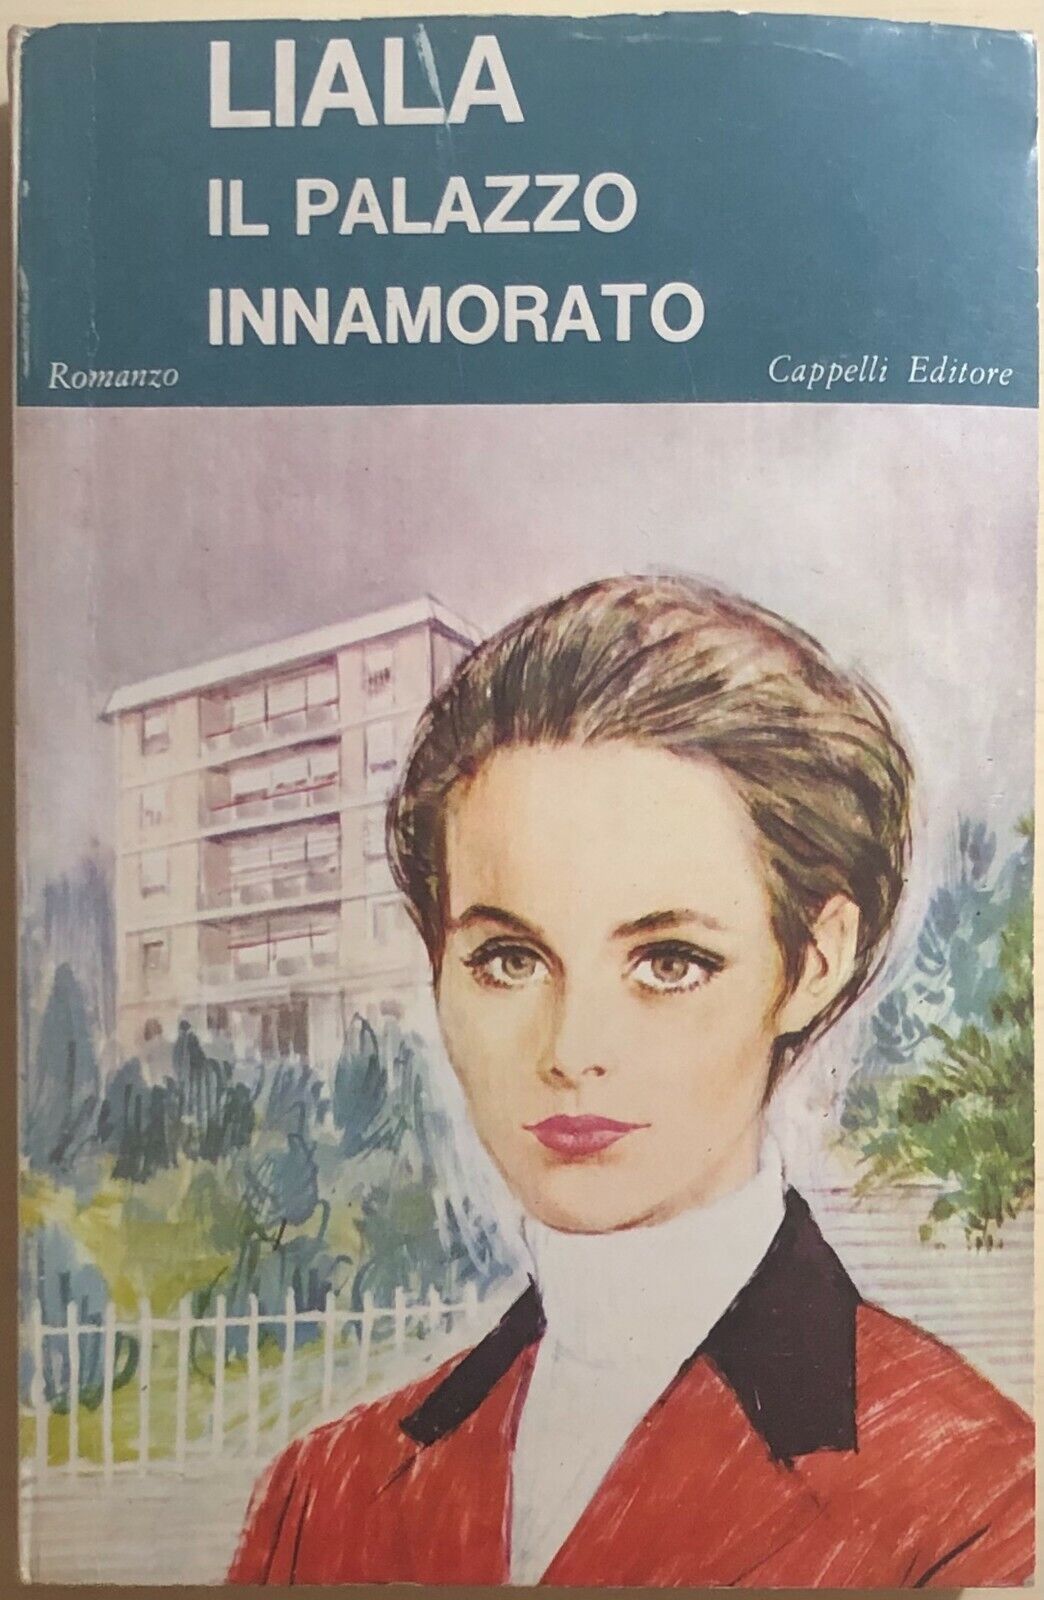 Il palazzo innamorato di Liala, 1967, Cappelli Editore